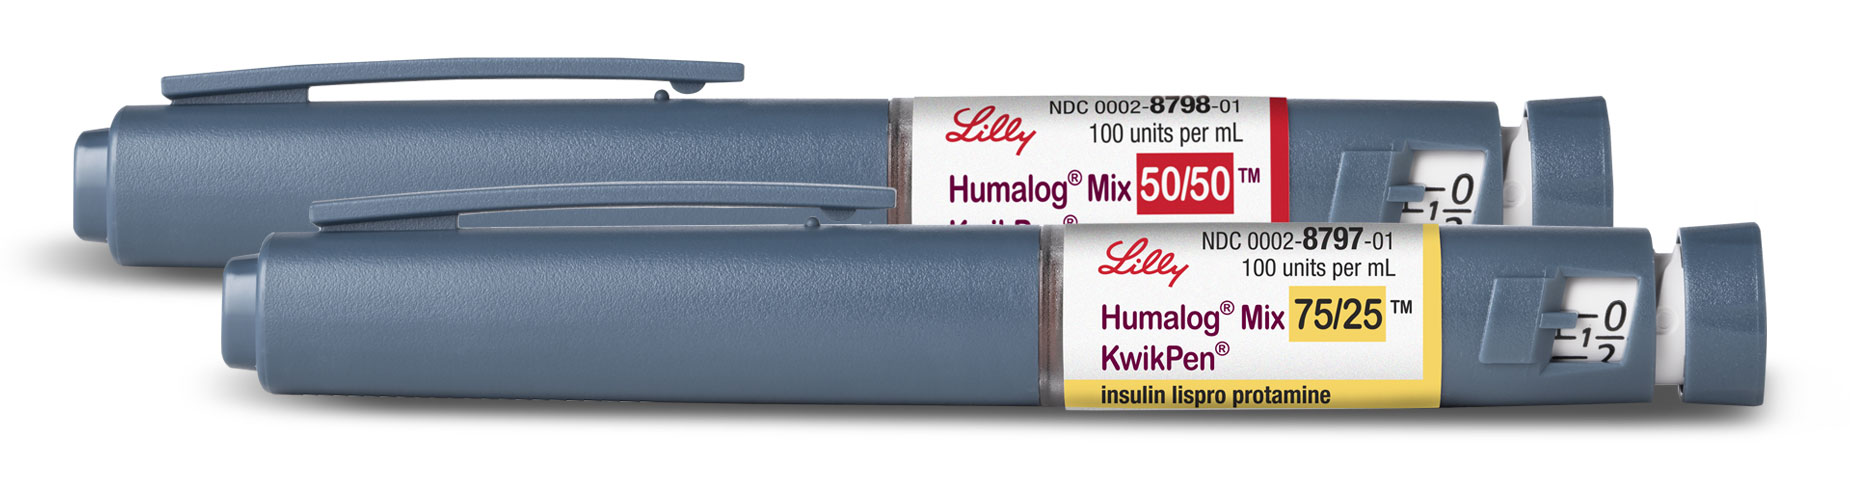 Humalog Mix50/50 and Humalog Mix75/25 insulin pens